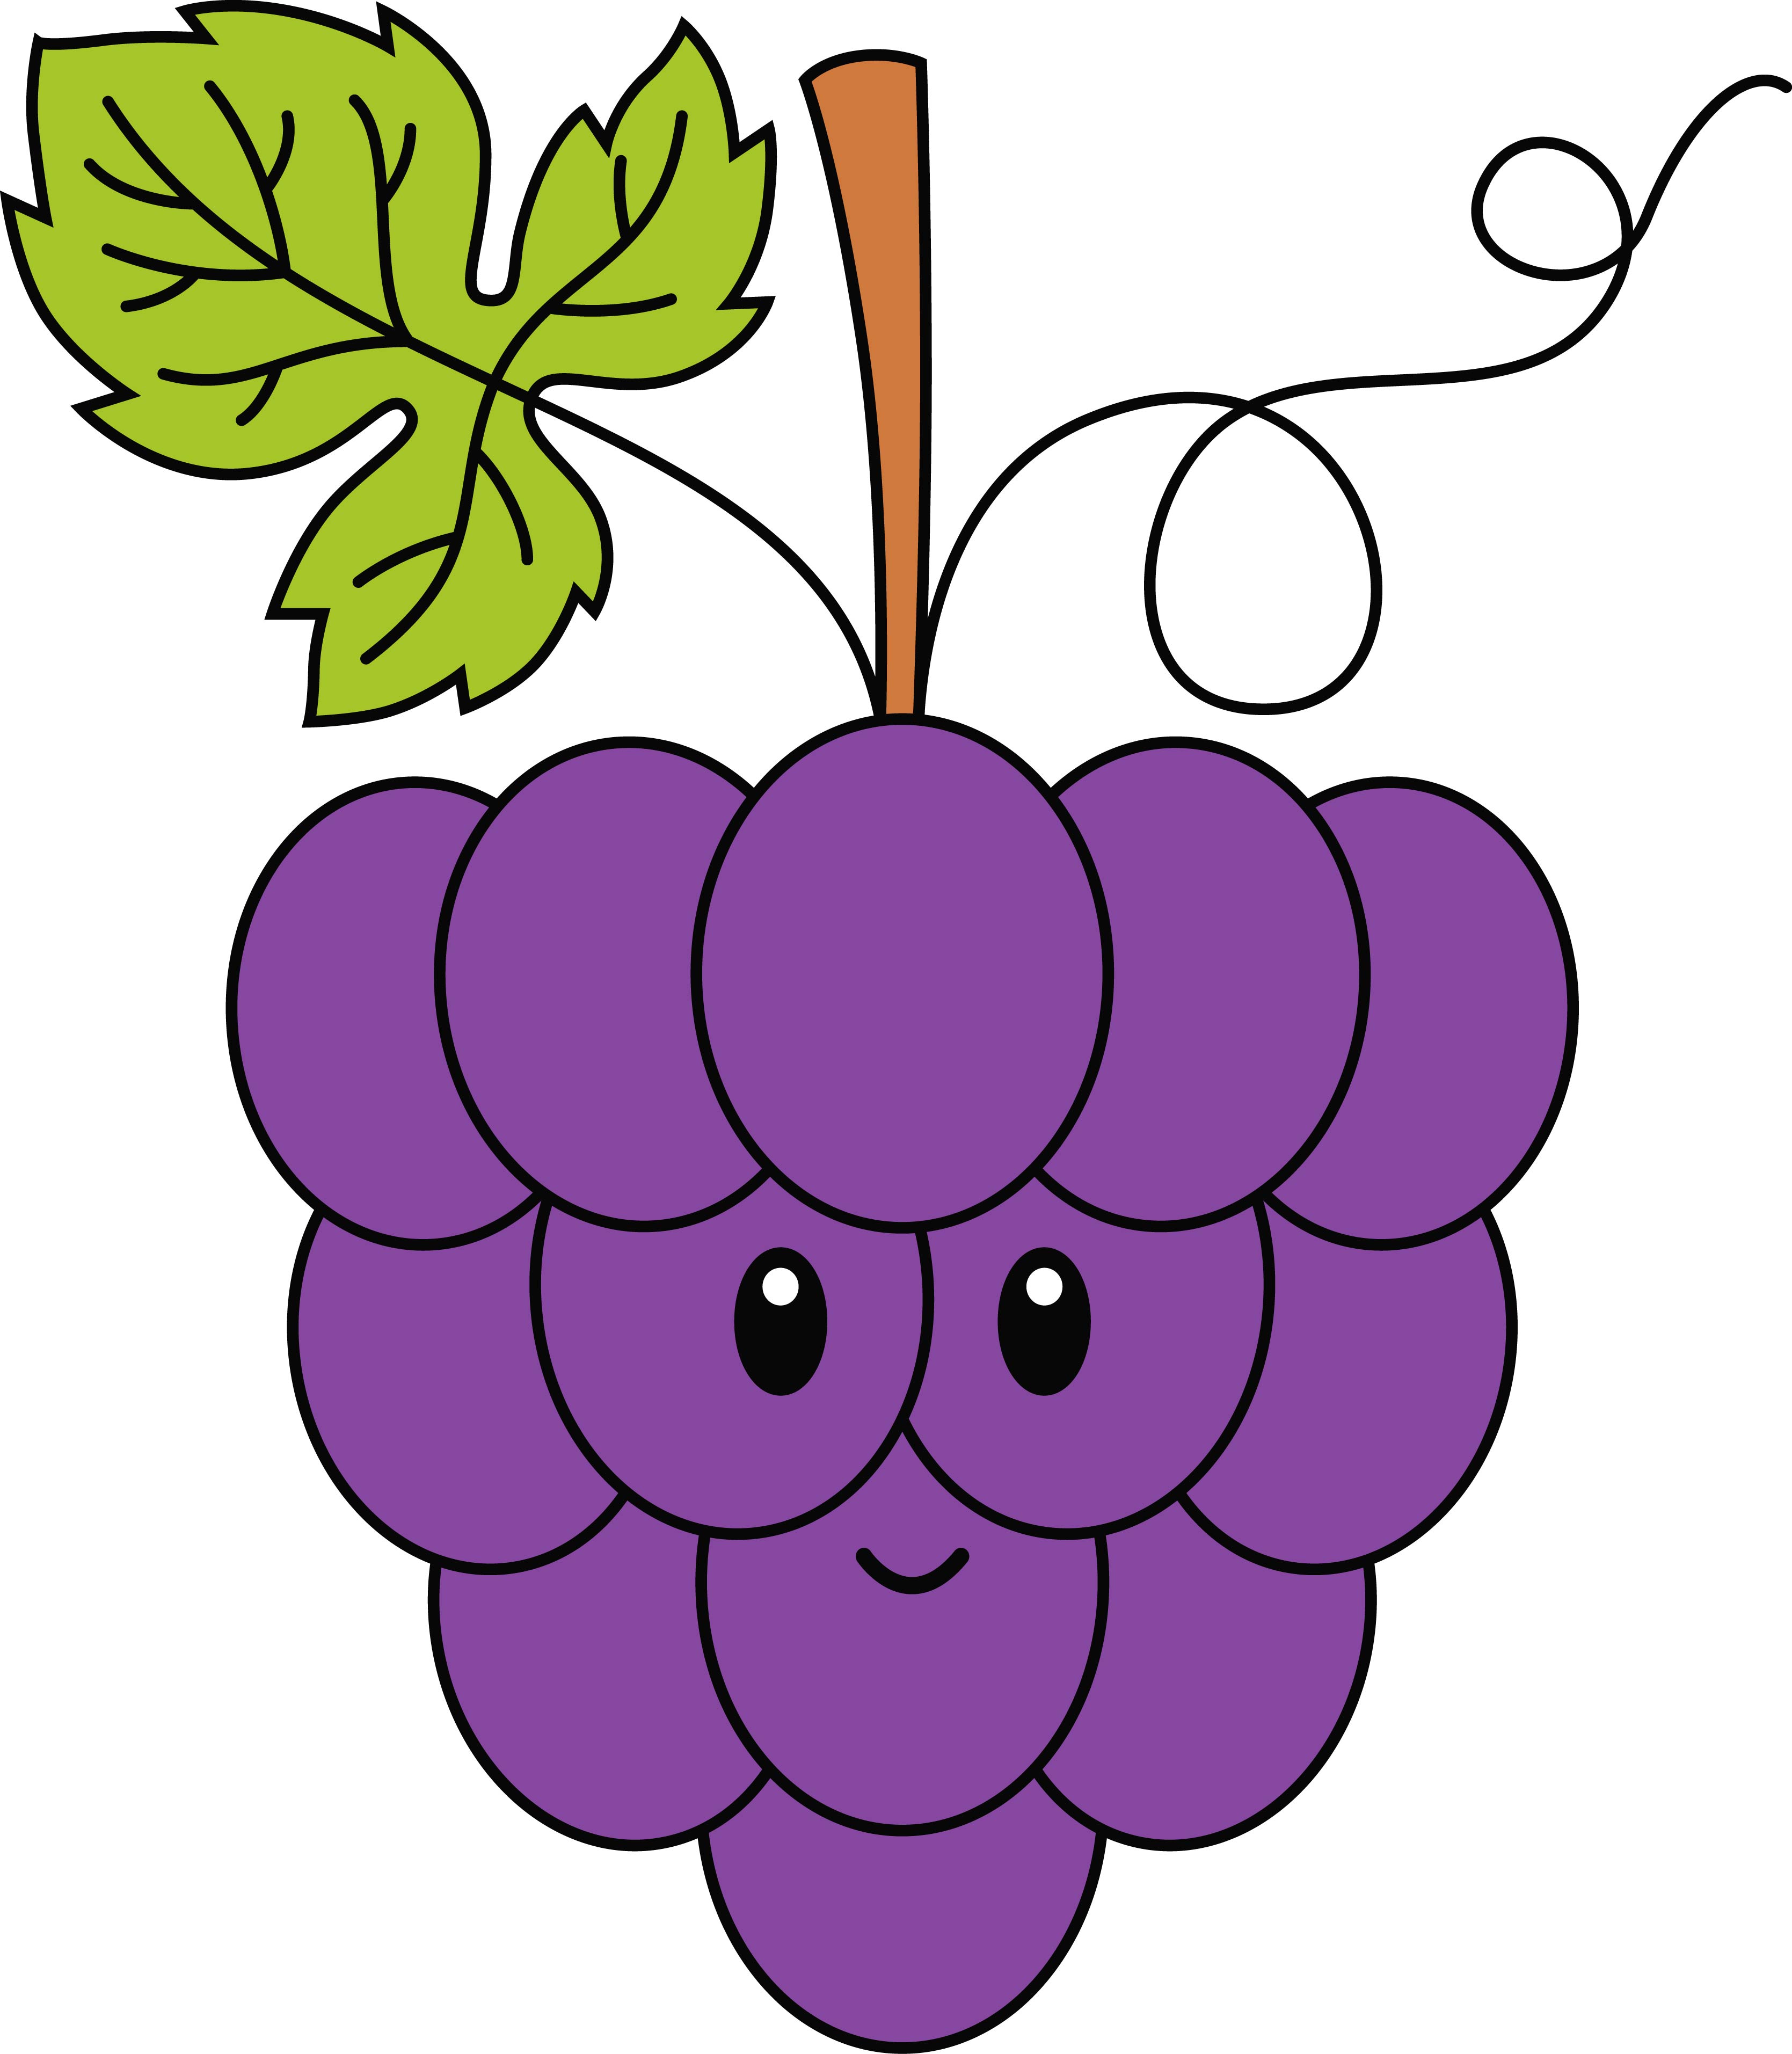 Раскраска мультяшный виноград с лицом формата А4 в высоком качестве